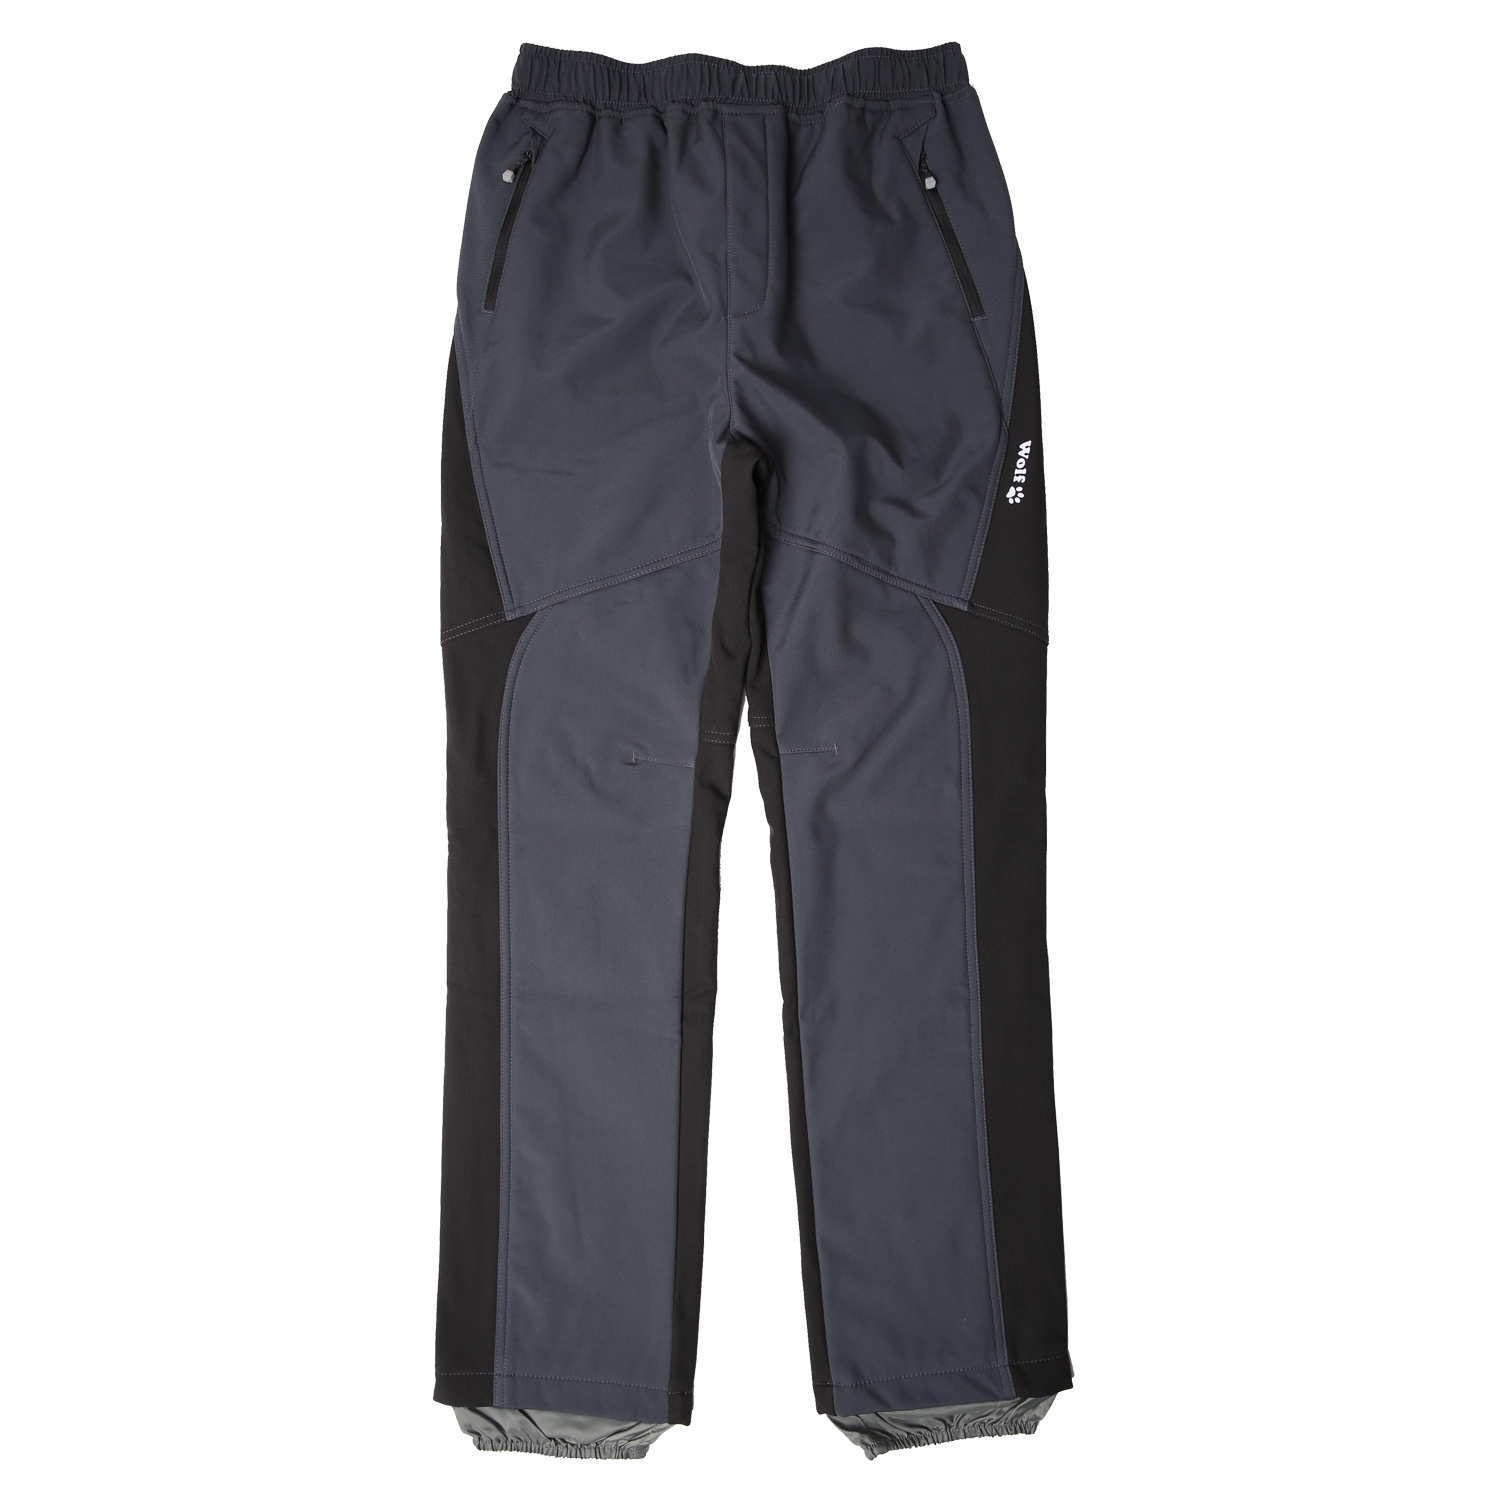 Chlapecké softshellové kalhoty, zateplené - Wolf B2298, šedá Barva: Šedá, Velikost: 170